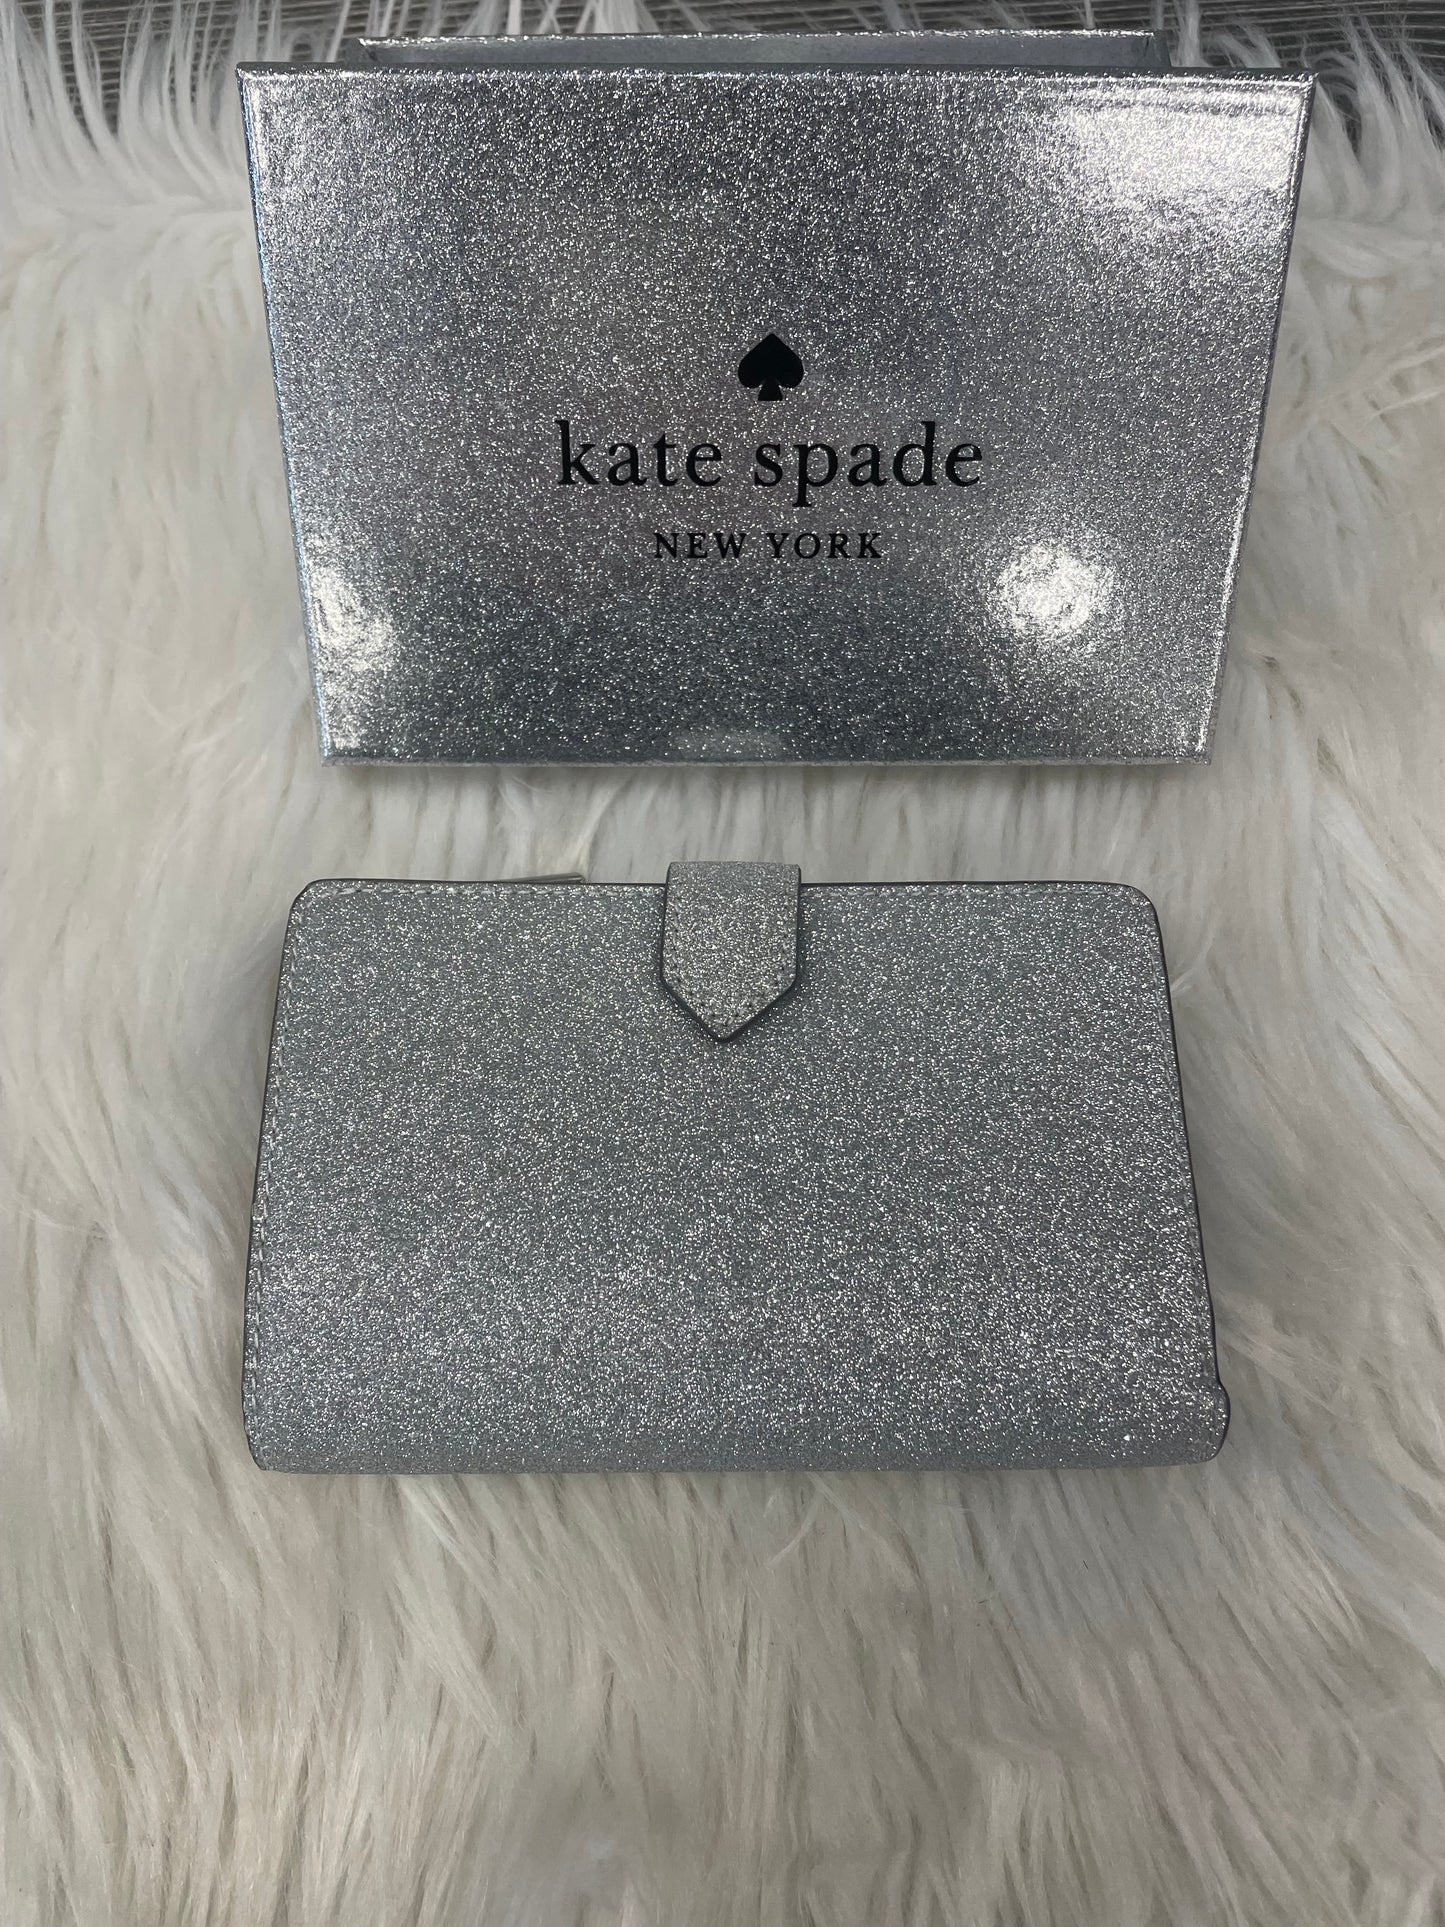 Wallet Kate Spade, Size Medium